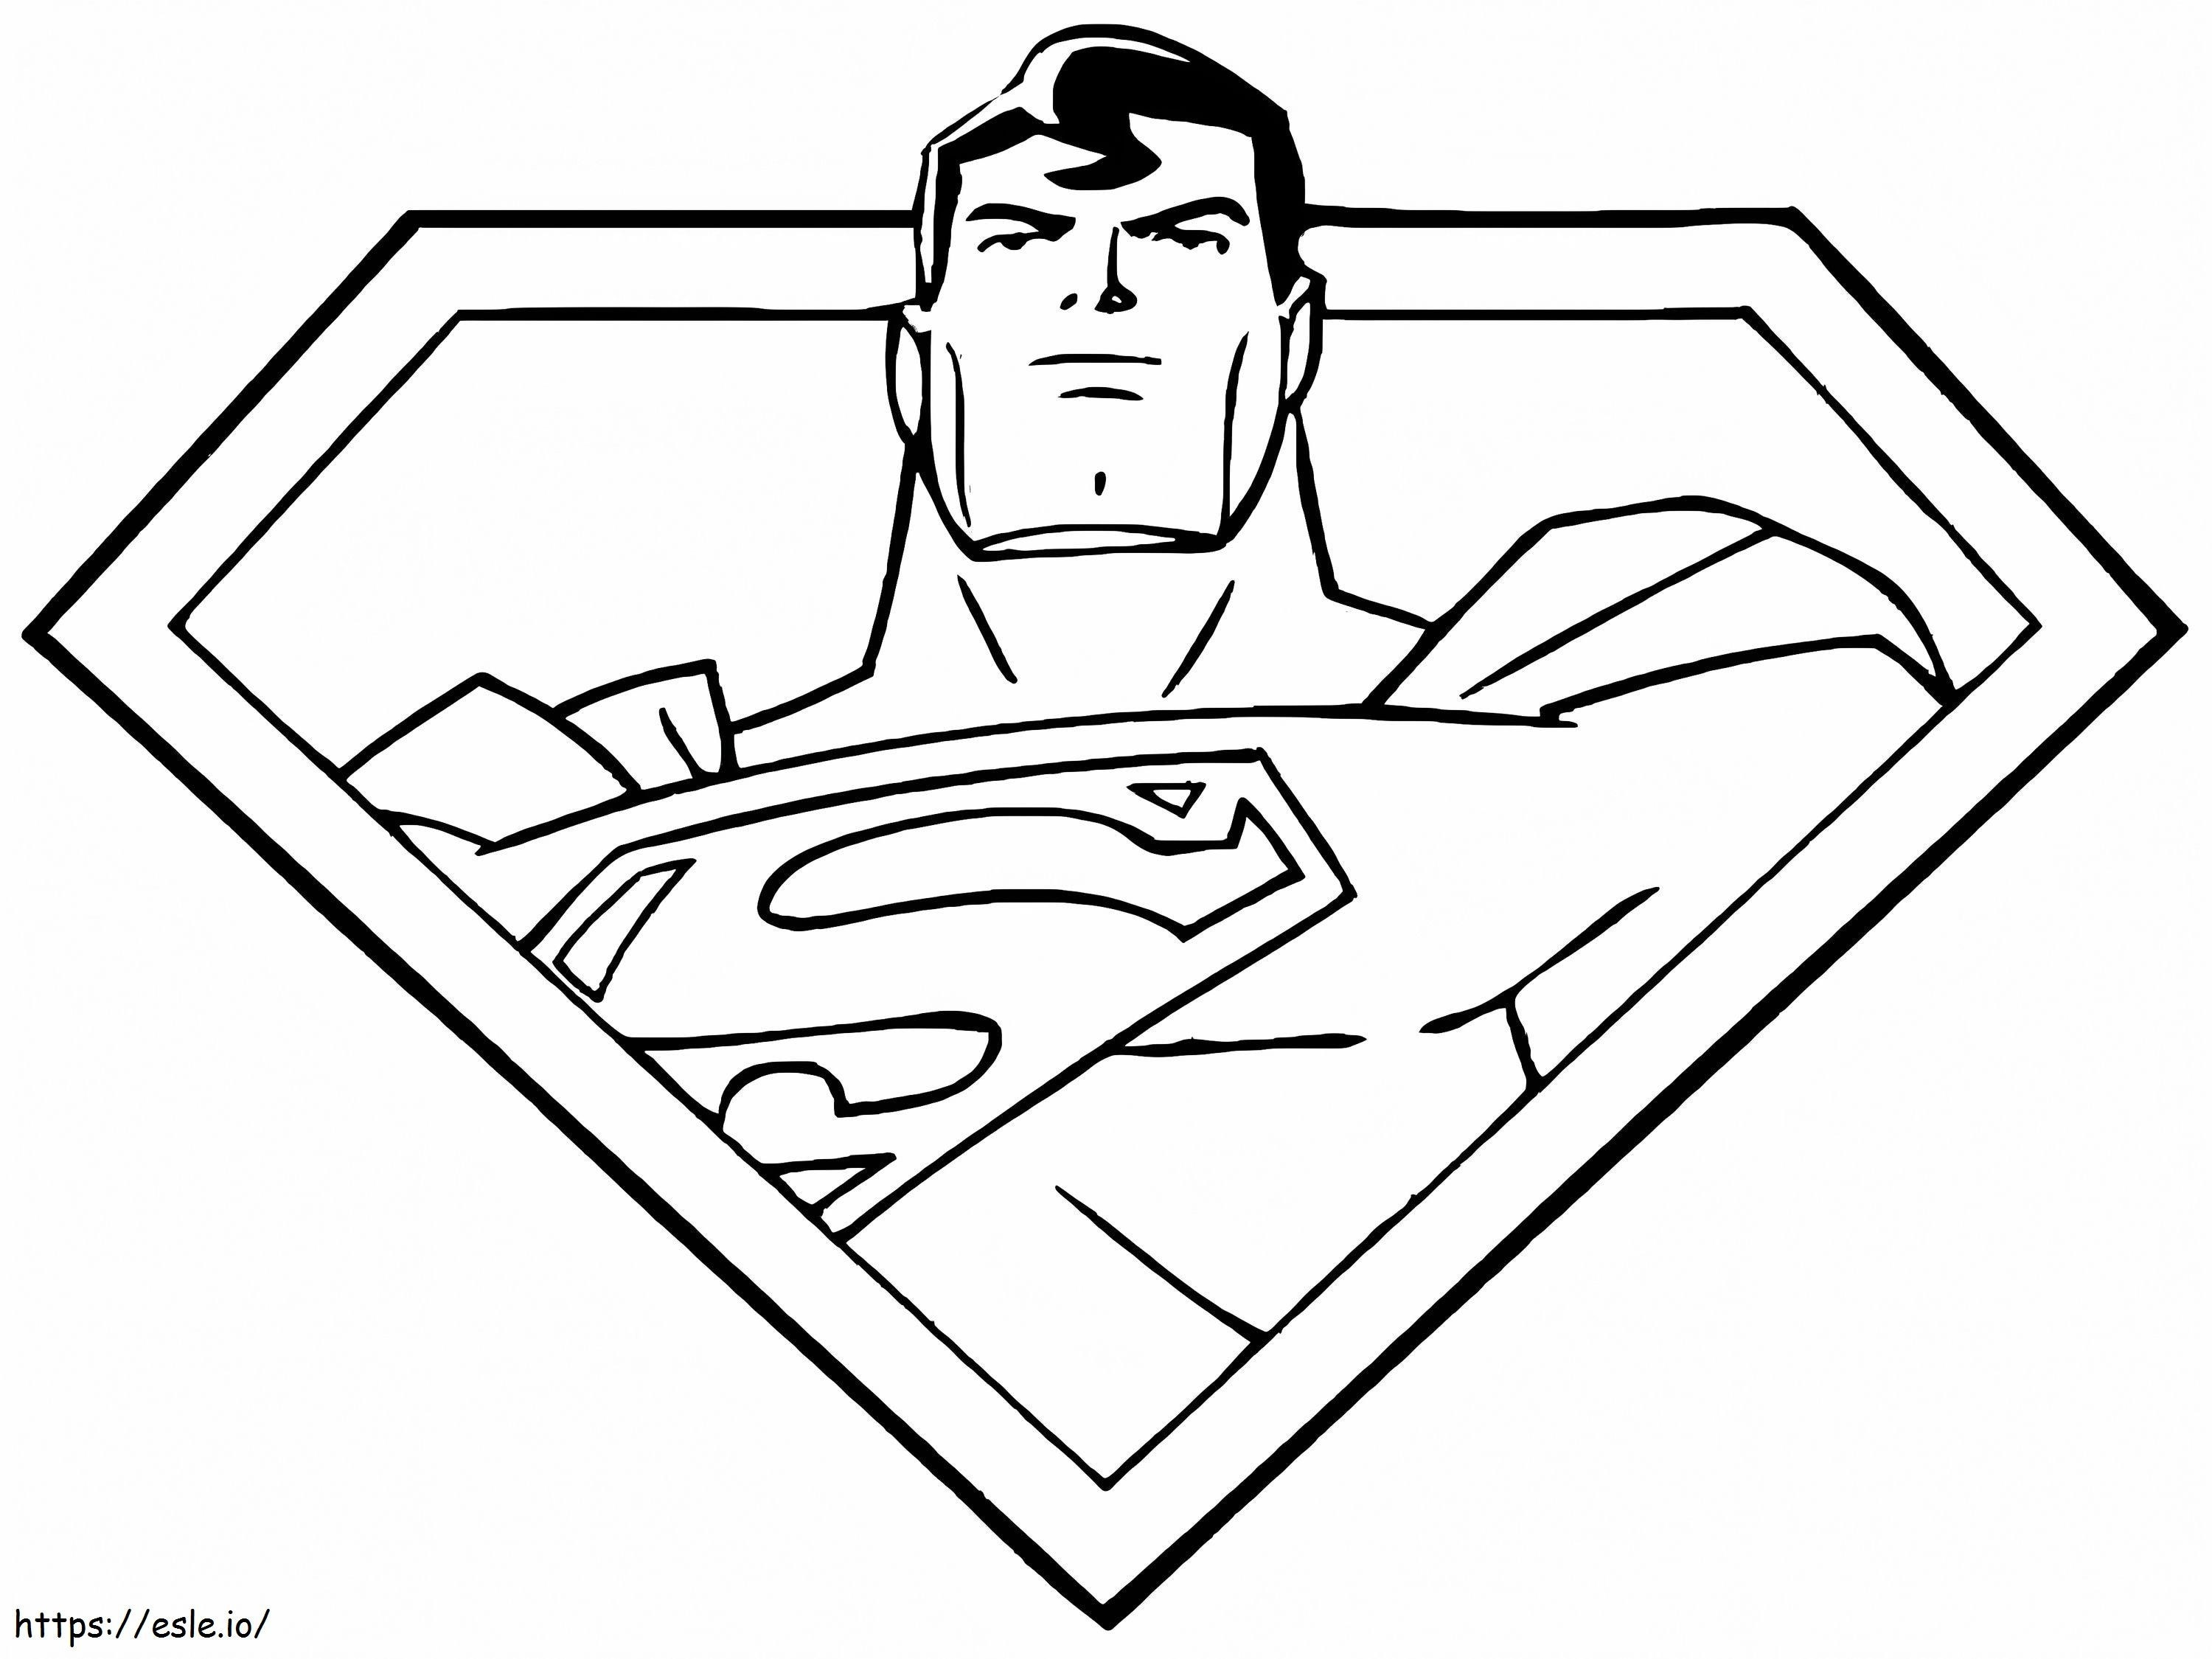 Retrato do Super-Homem para colorir